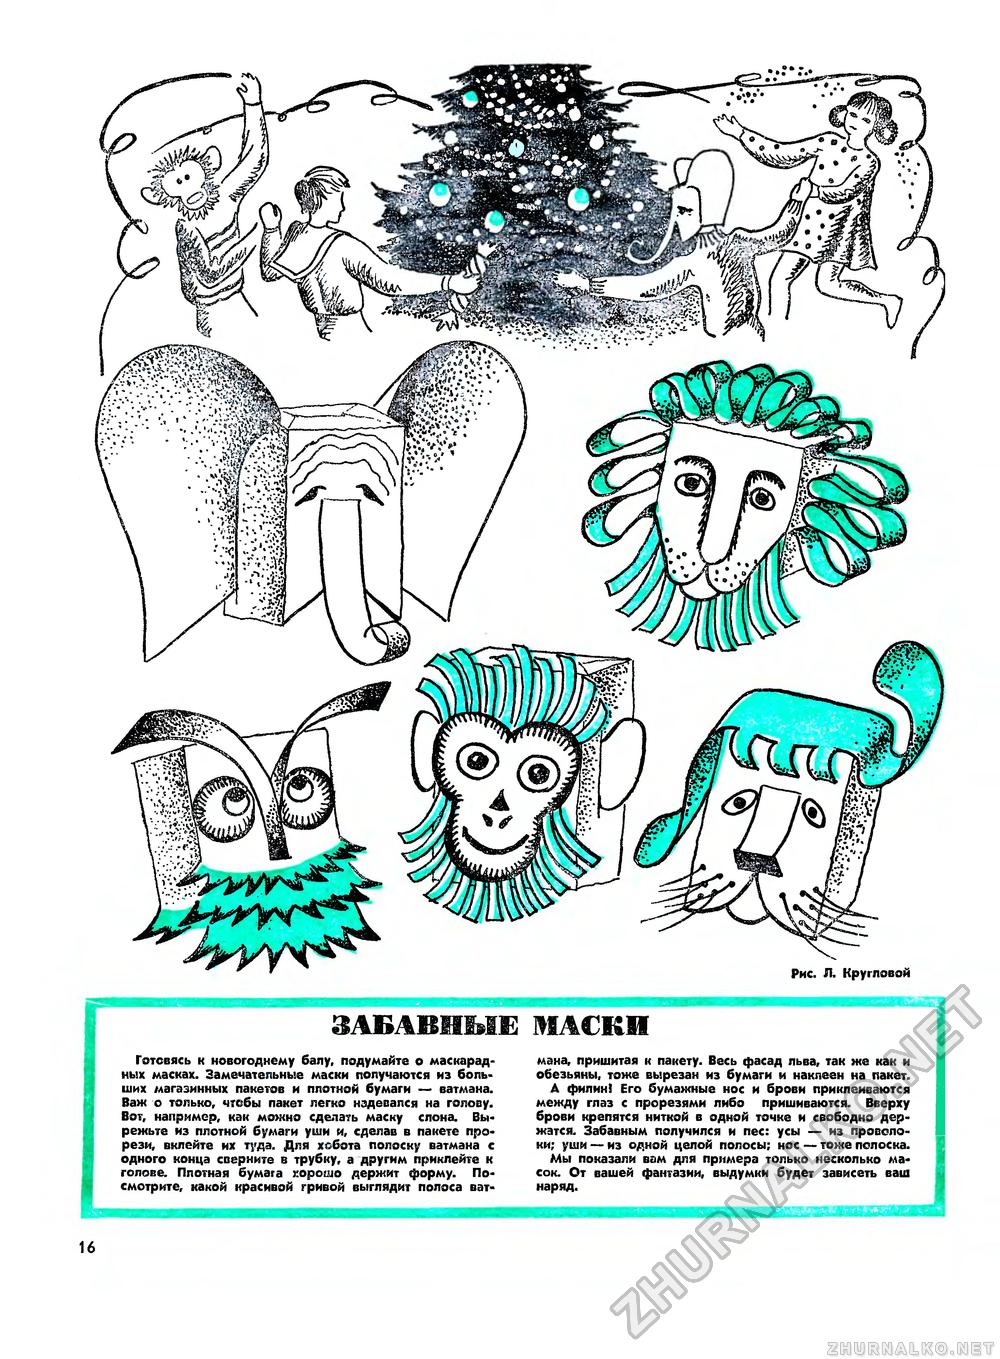 Юный техник - для умелых рук 1975-11, страница 18